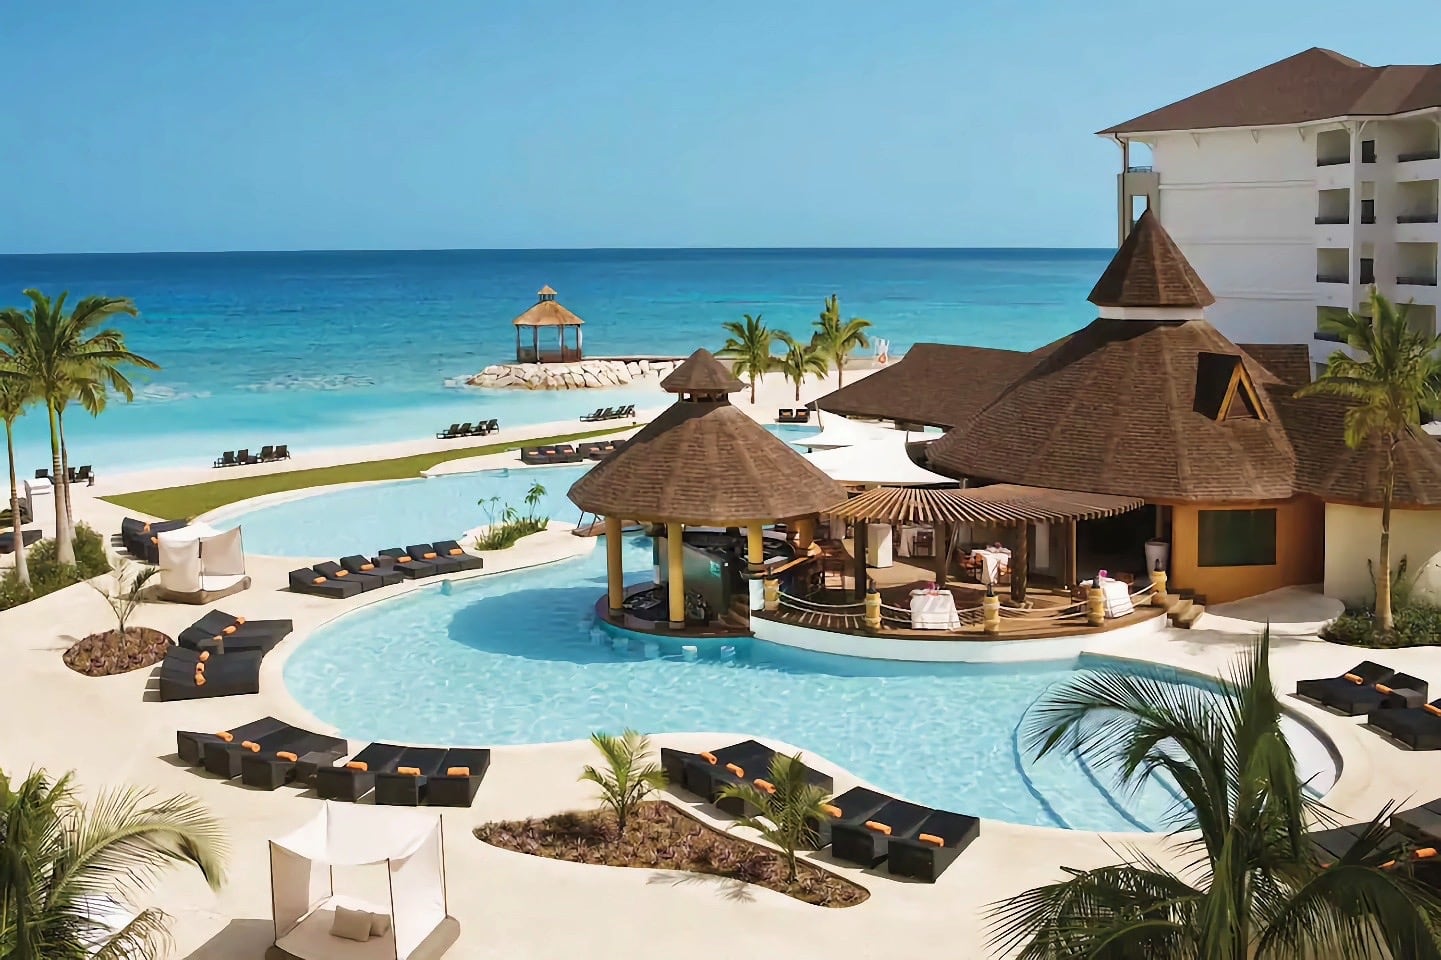 large pool overlooking blue sea at luxury hotel